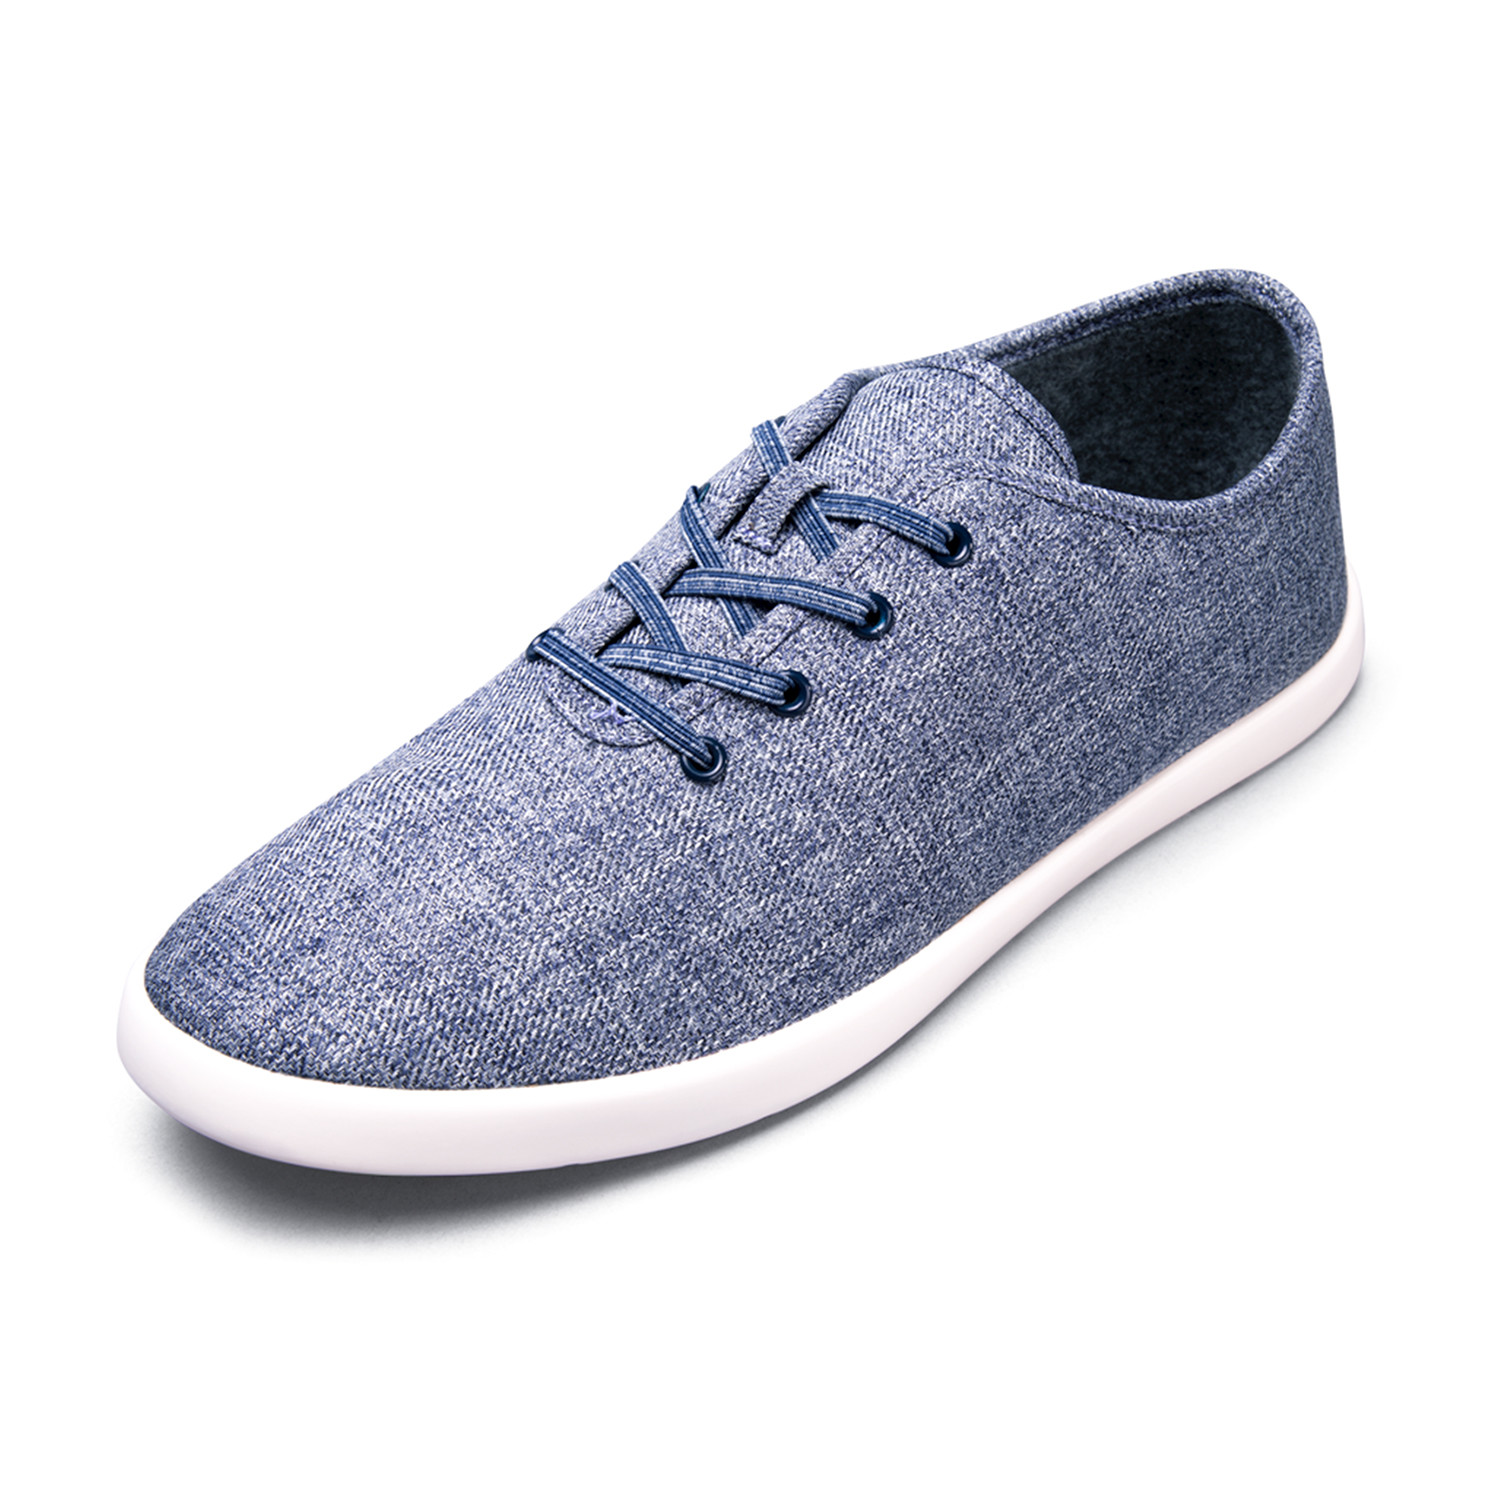 Men's Loungy Laced Shoes // Denim (Men's US Size 7) - Baubax - Touch of ...